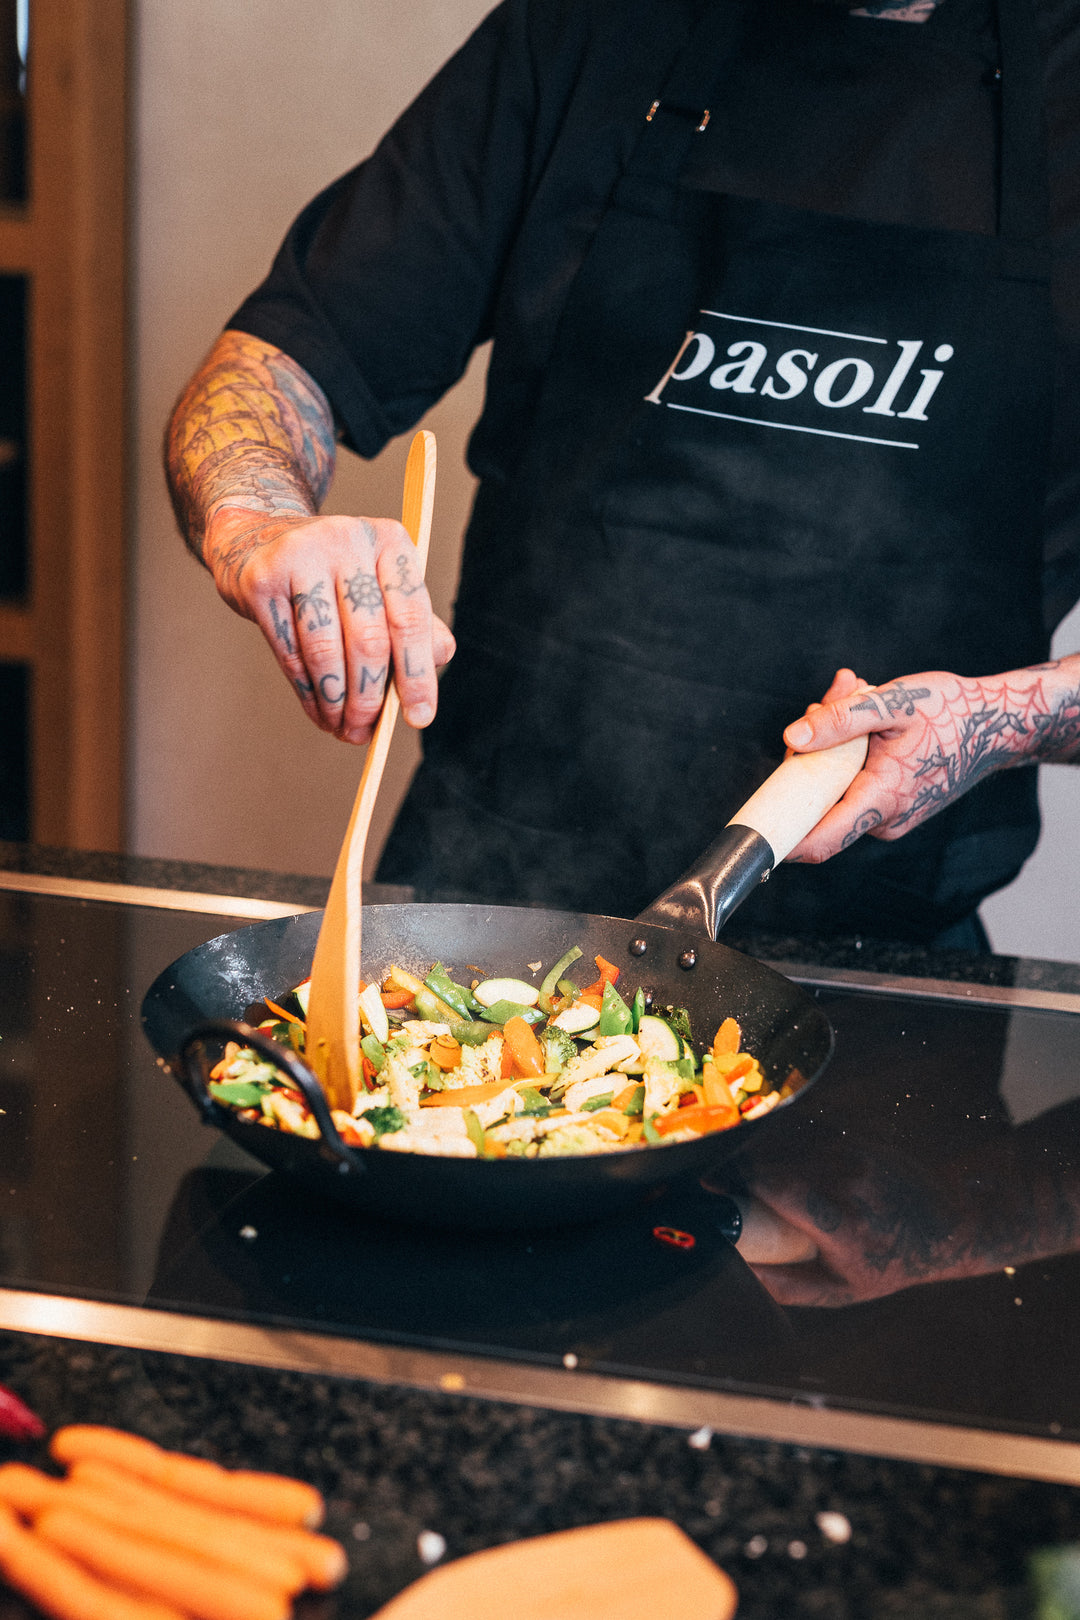 Nuestro chef profesional Mane asa verduras en nuestro wok de pasoli.